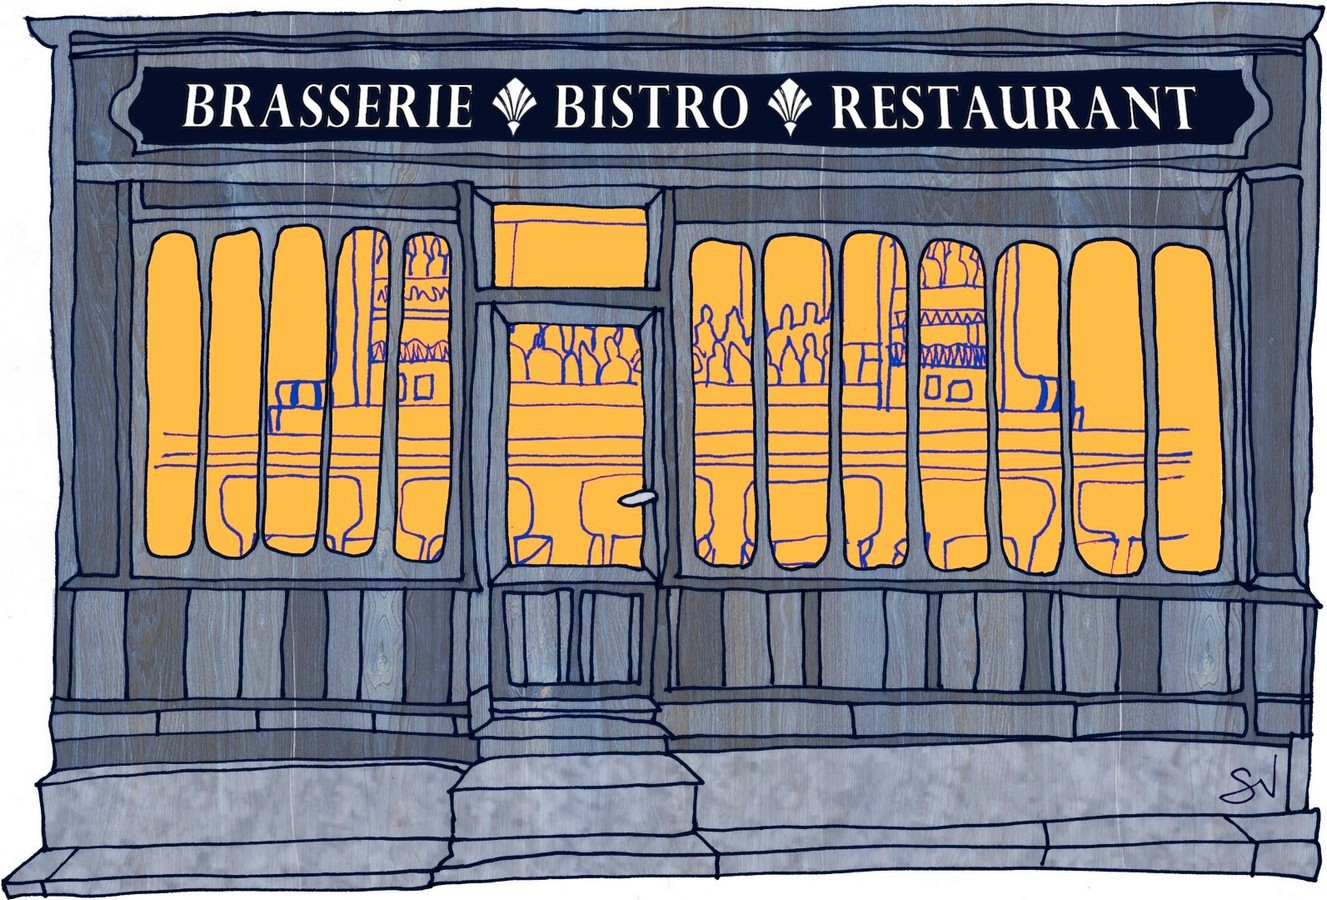 Une façade dans les tons bleu ardoise avec une enseigne disant "BRASSERIE - BISTRO - RESTAURANT". À l'intérieur, on voit par la vitrine un comptoir de bar avec des bouteilles dans le fond et une rangée de tabourets devant, dans une lumière orange.